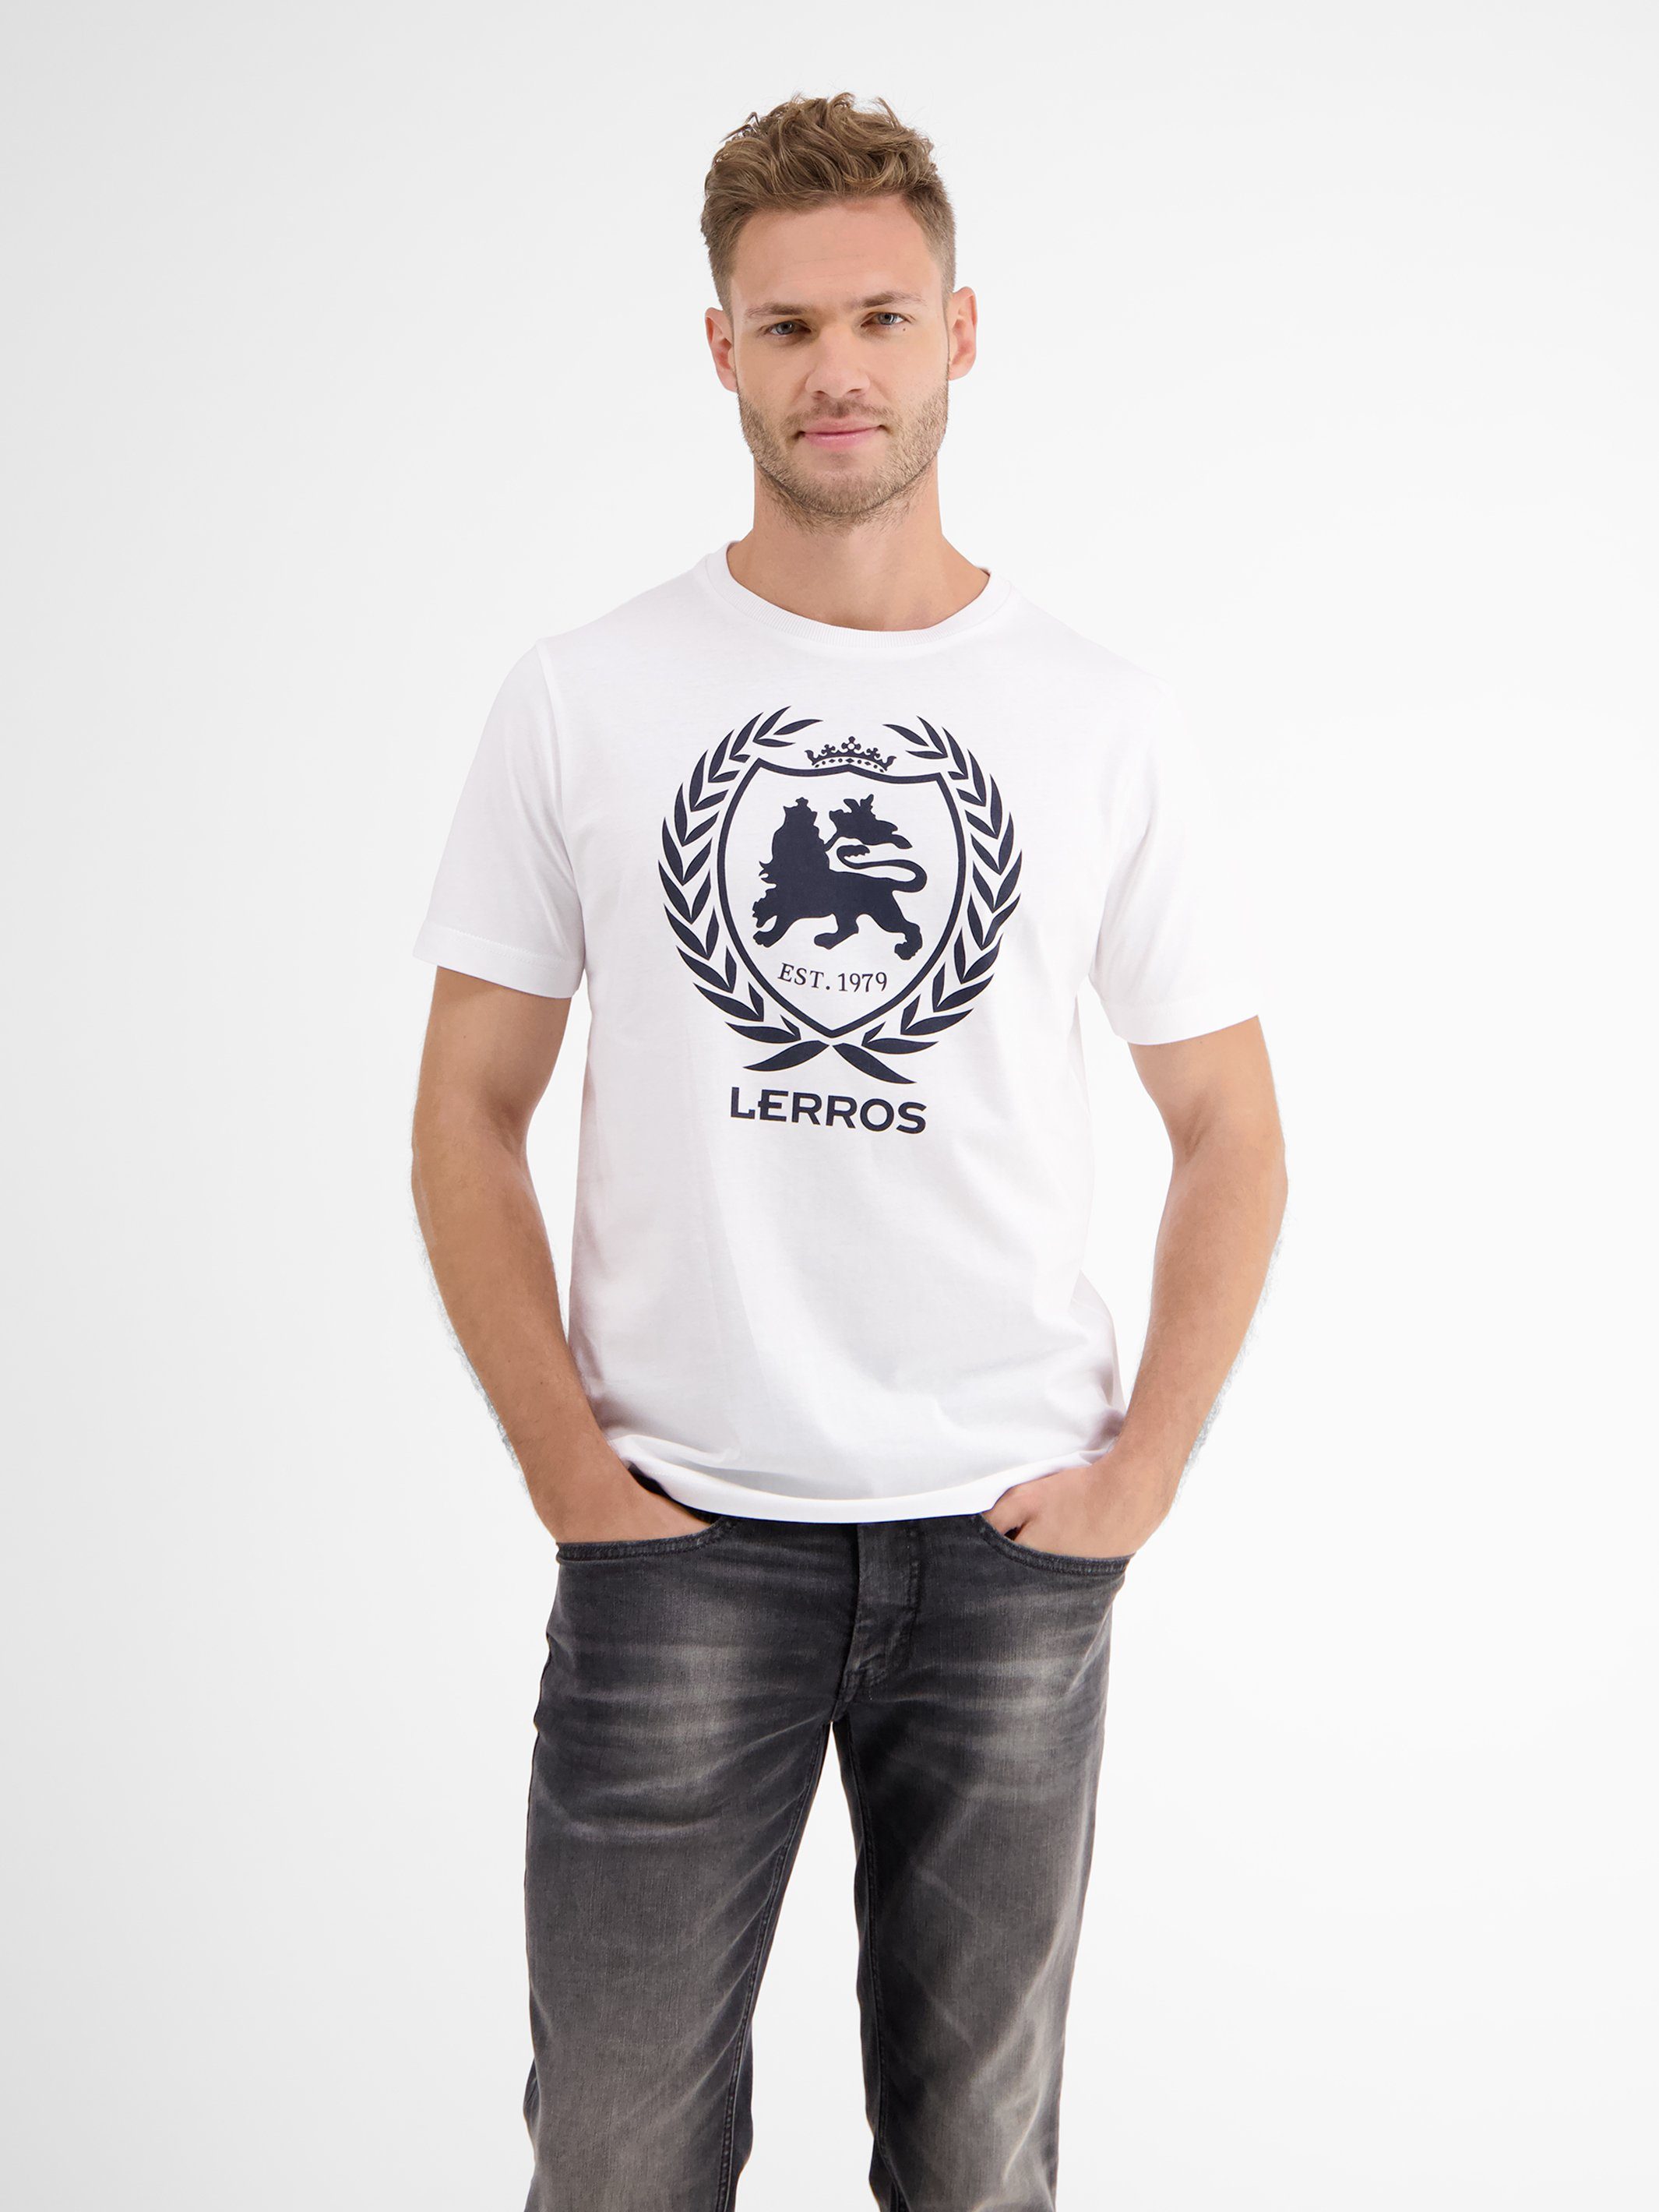 Logoprint T-Shirt LERROS T-Shirt, WHITE LERROS